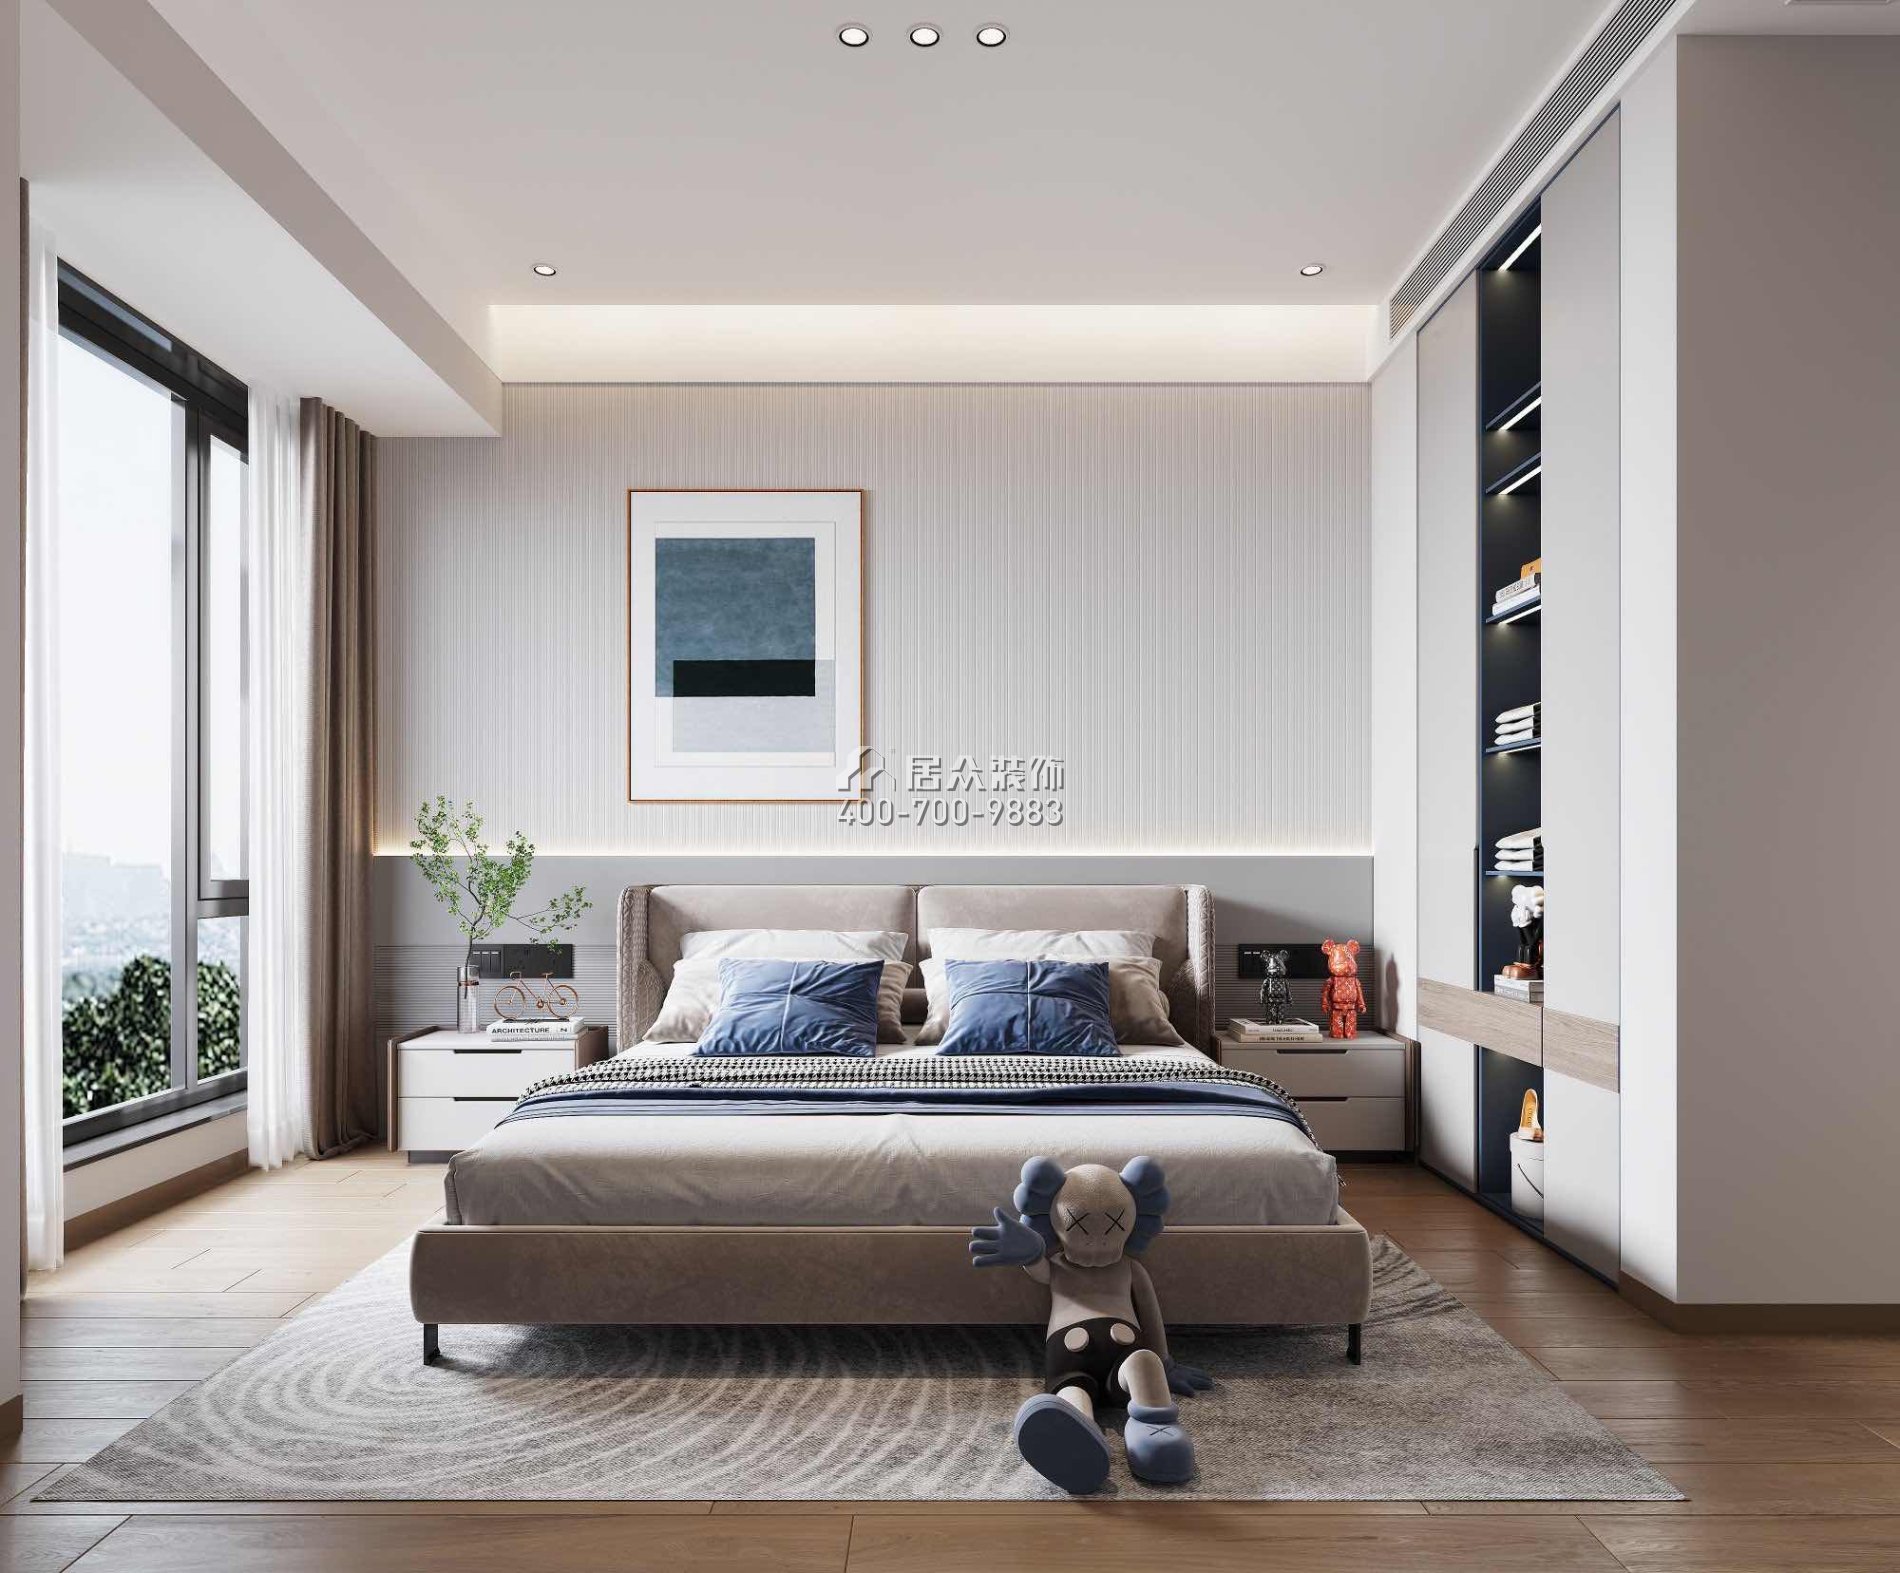 華發新城200平方米現代簡約風格平層戶型臥室裝修效果圖